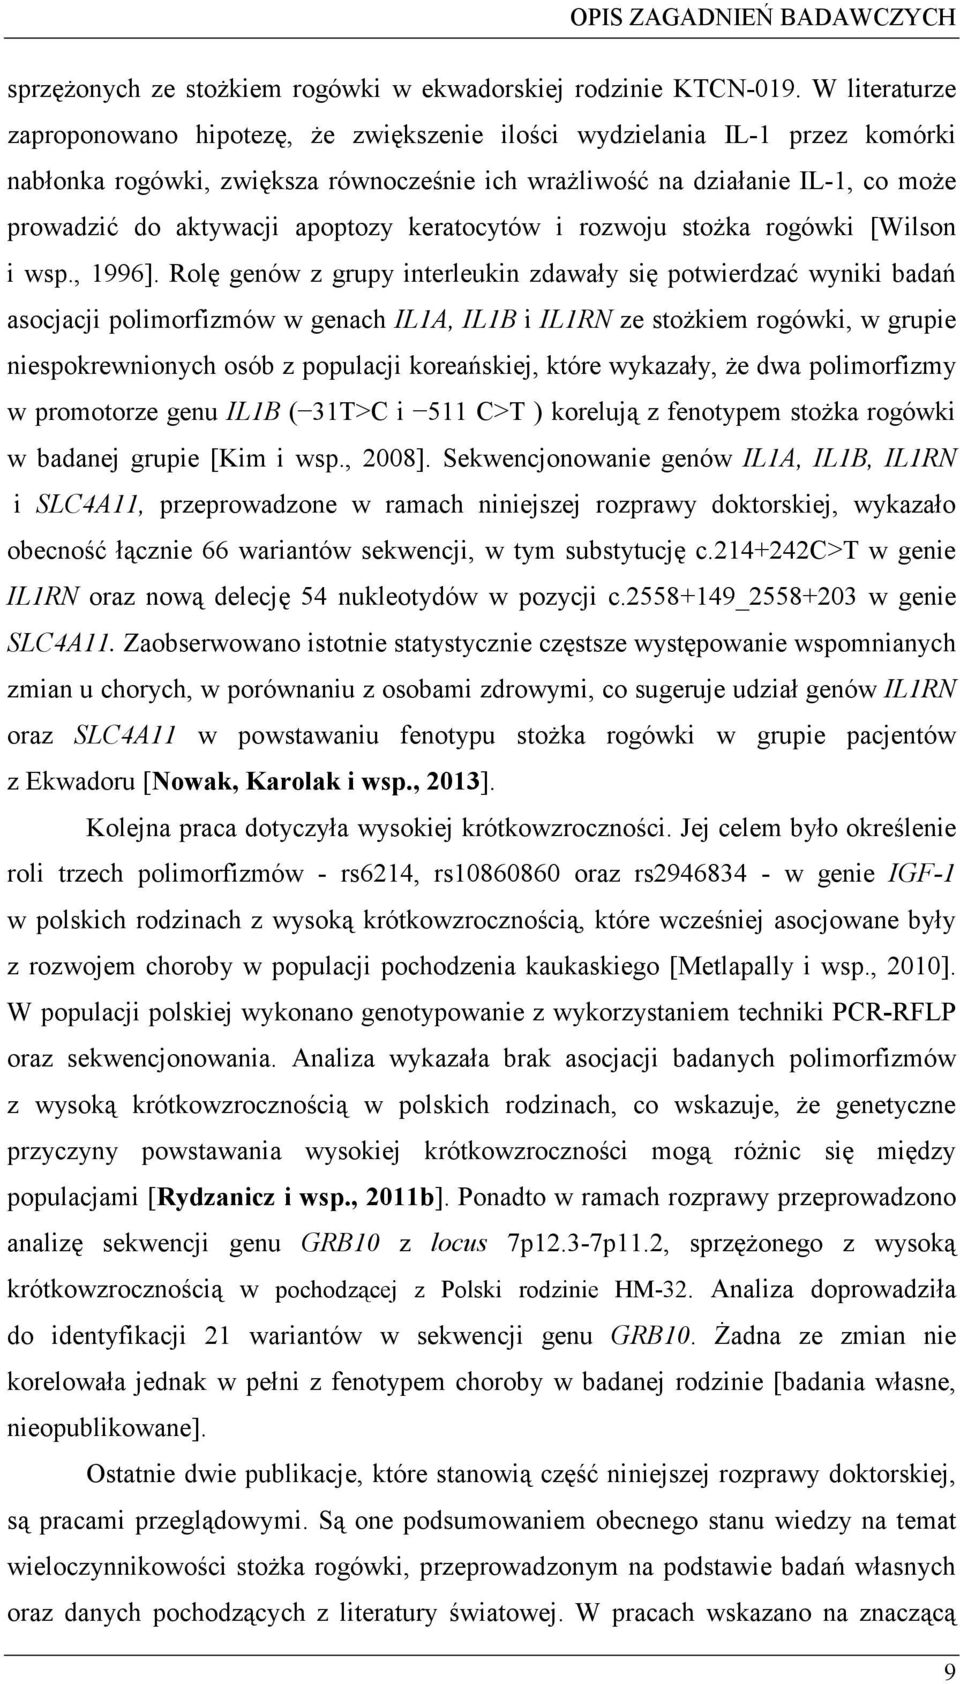 keratocytów i rozwoju stoka rogówki [Wilson i wsp., 1996].